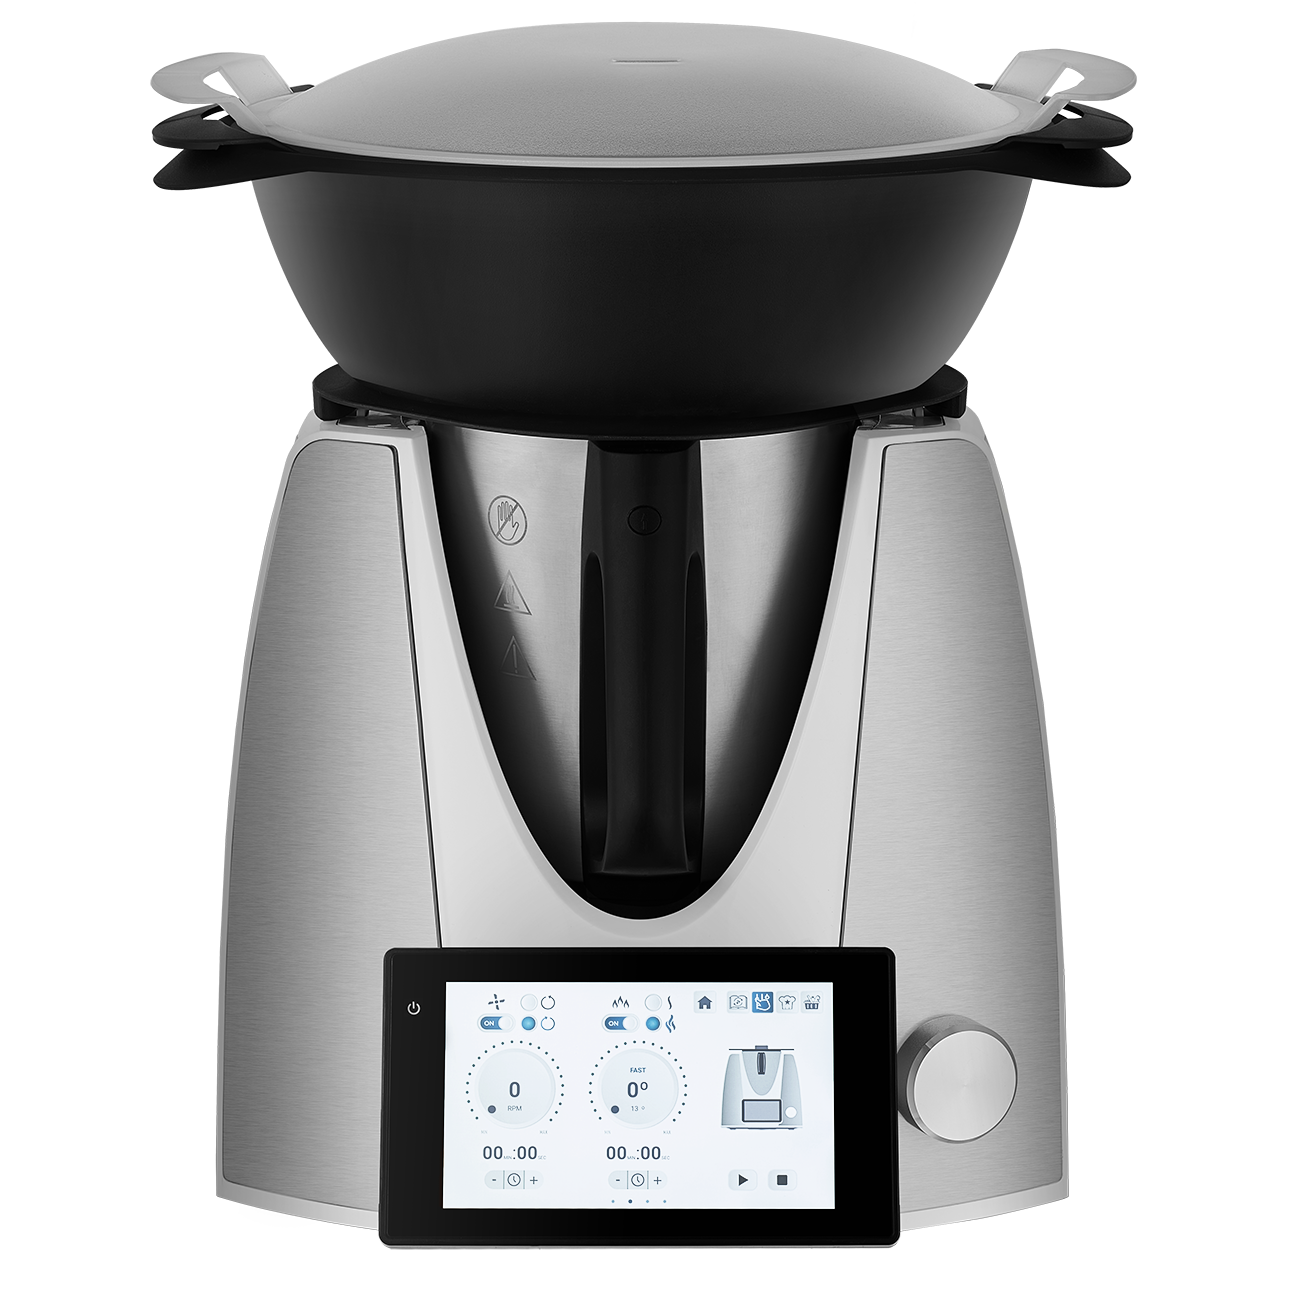 7'' Screen Smart Cooking Machine-110V (KE-7001）